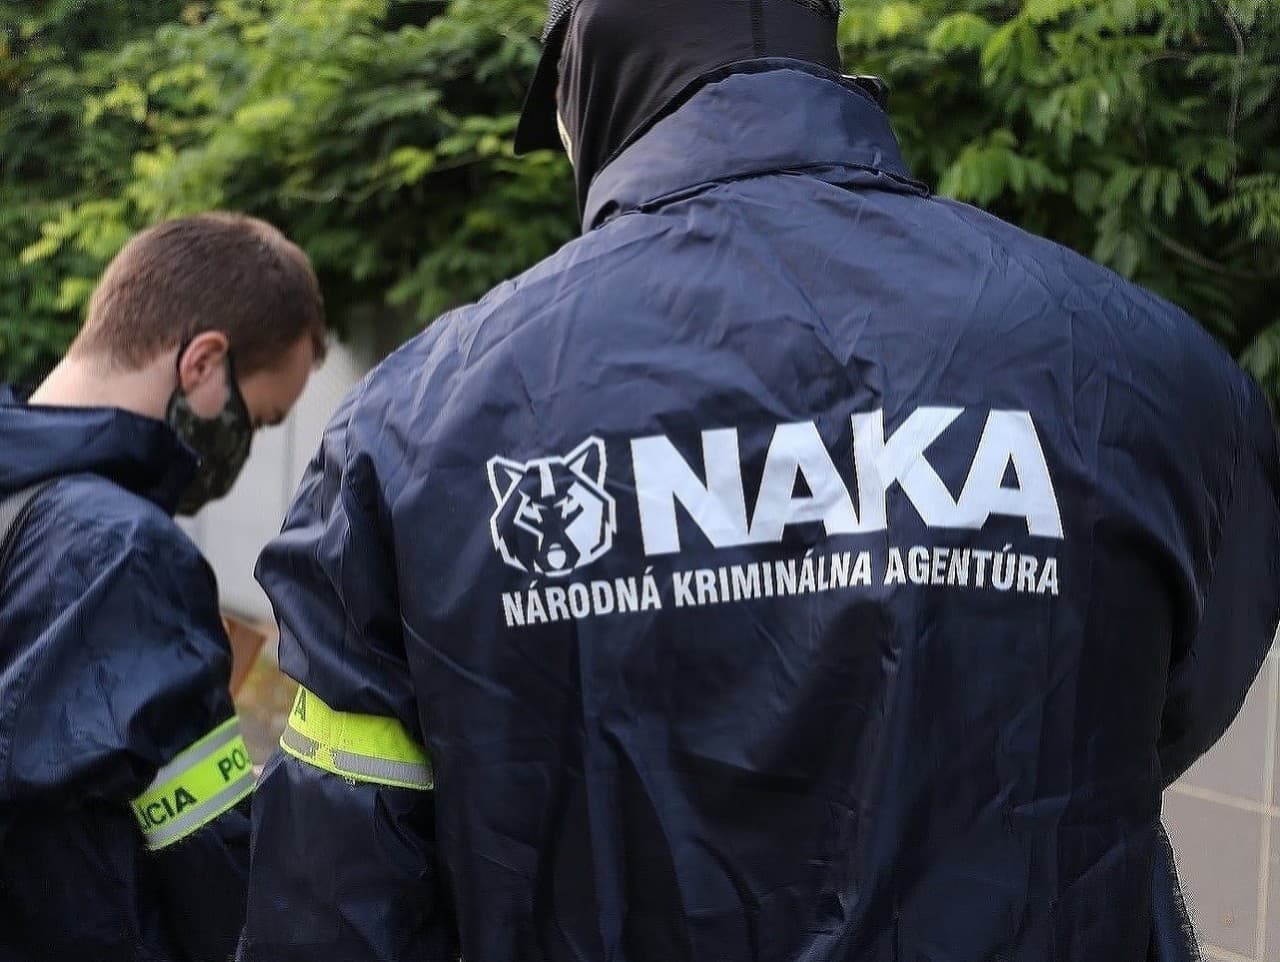 Emissziós botrány ügyében végez házkutatásokat a NAKA Szlovákia több pontján